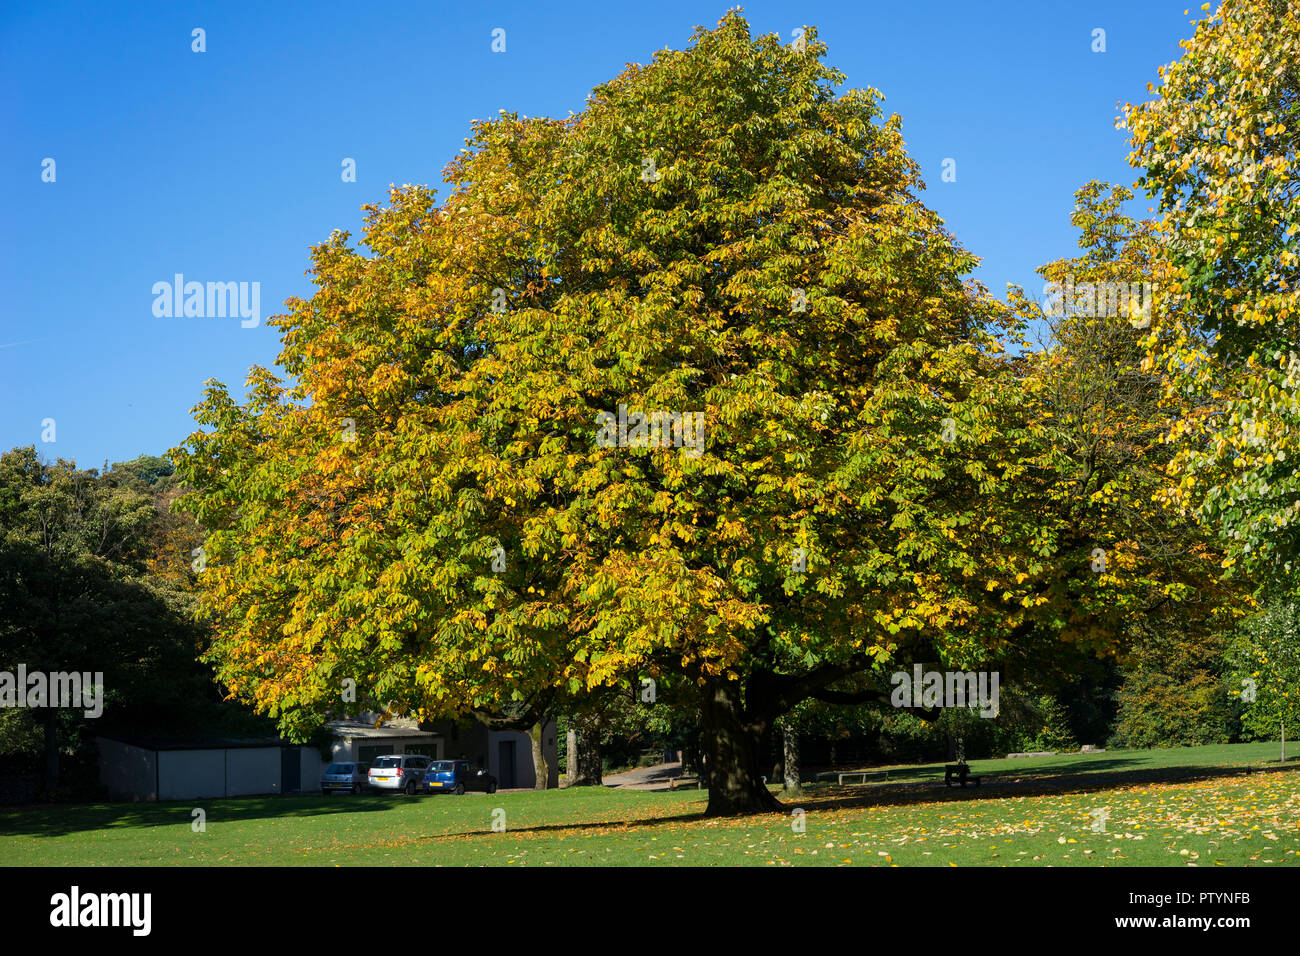 European Horse Chestnut Tree (Aesculus hippocastanum), UK. Stock Photo